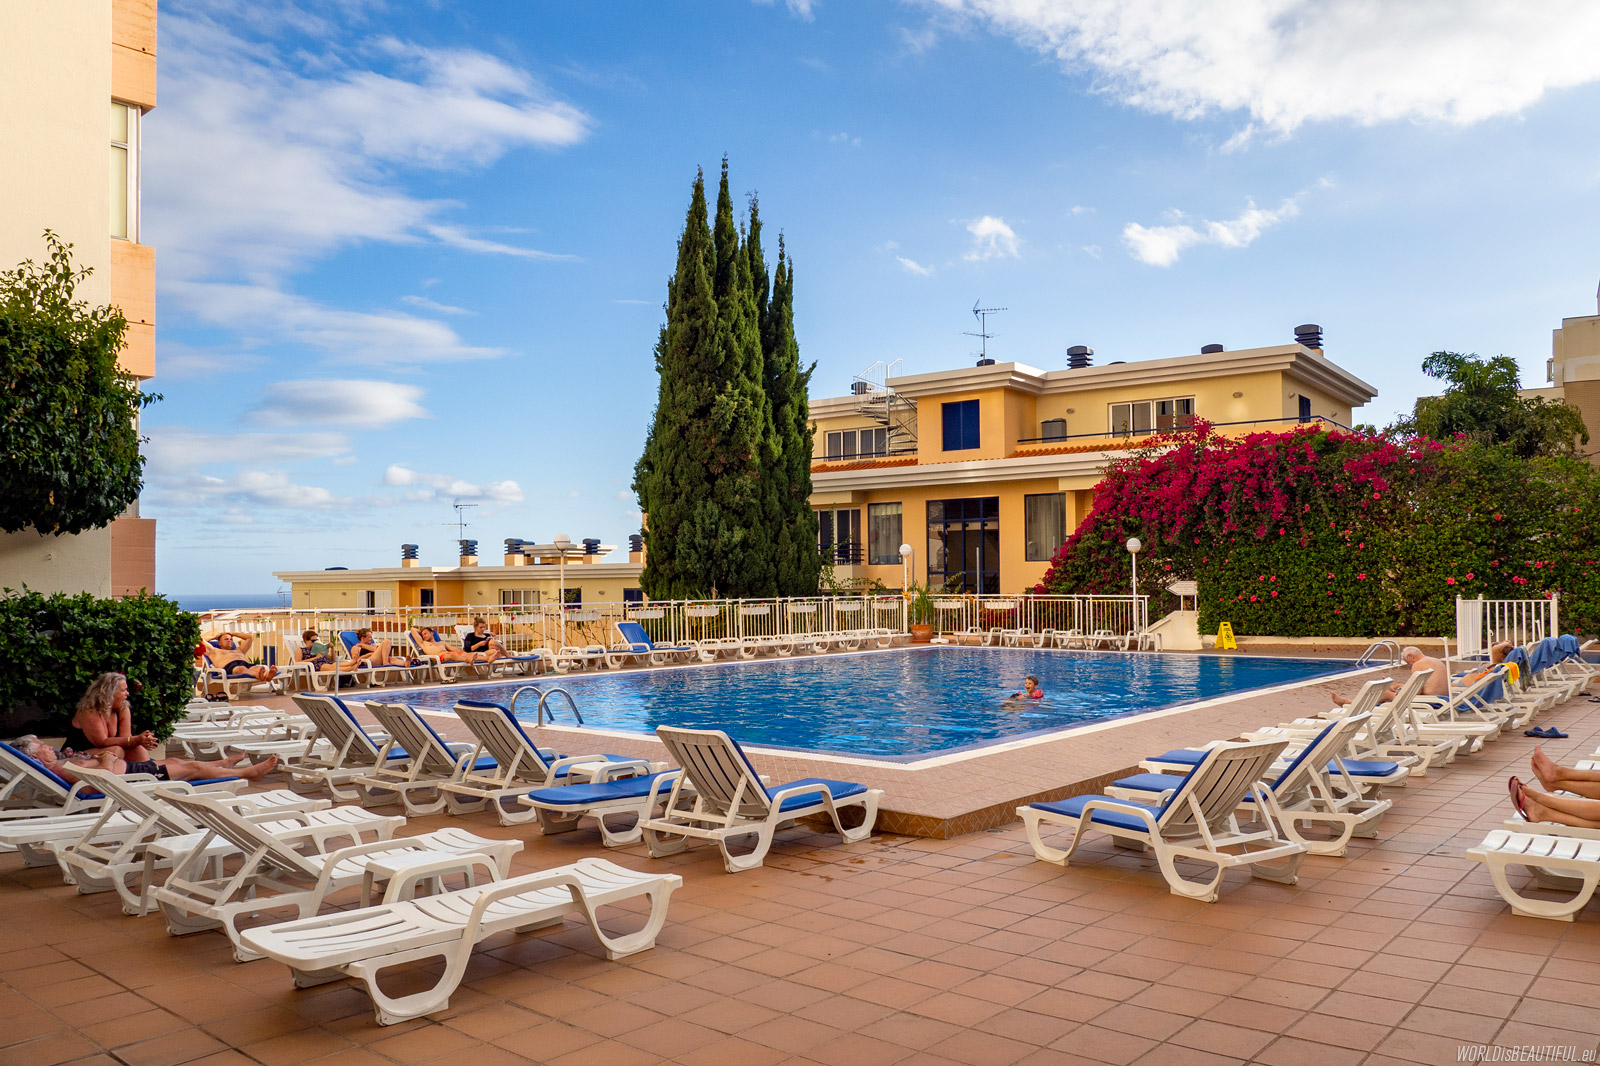 Swimming pool - Hotel Dorisol Estrelicia